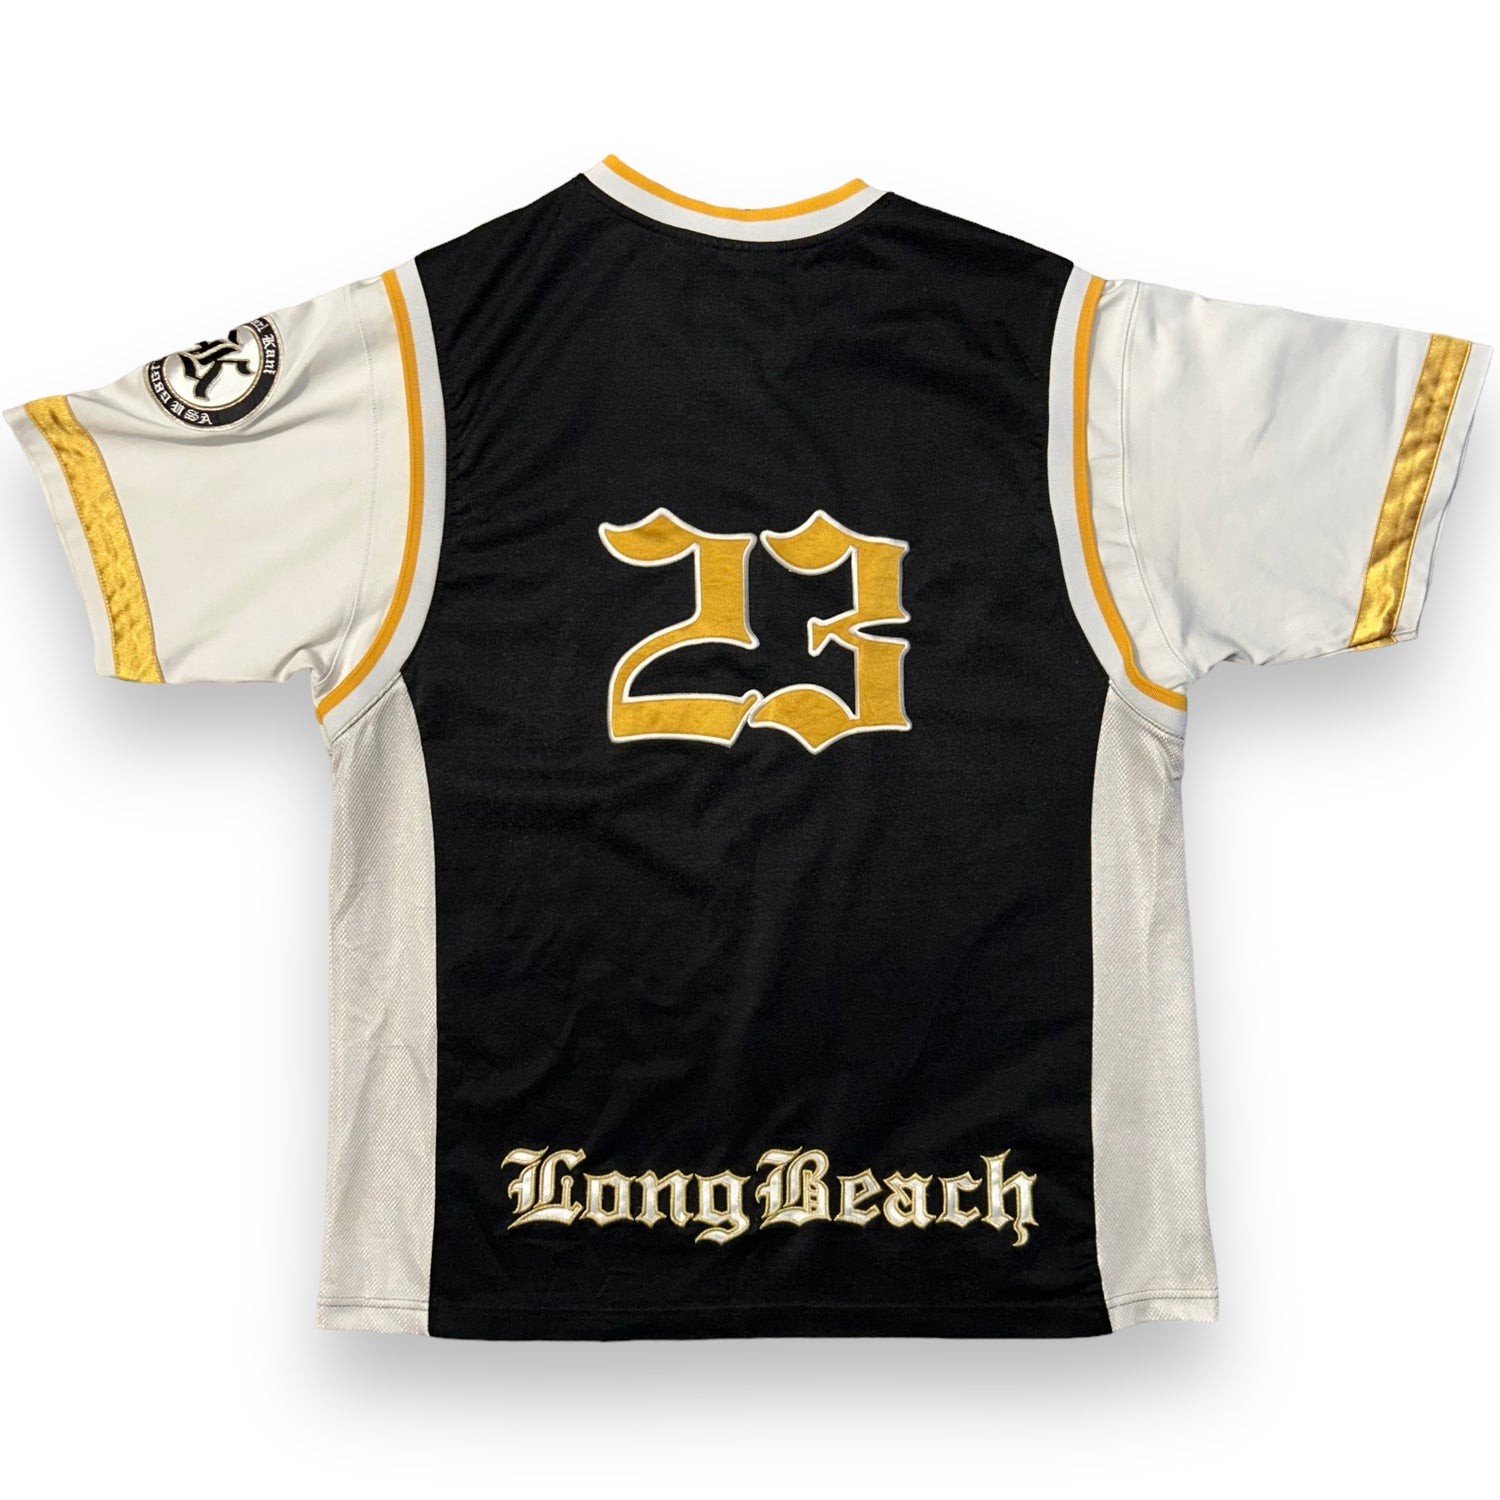 Karl Kani Long Beach Vintage Jersey (XL)